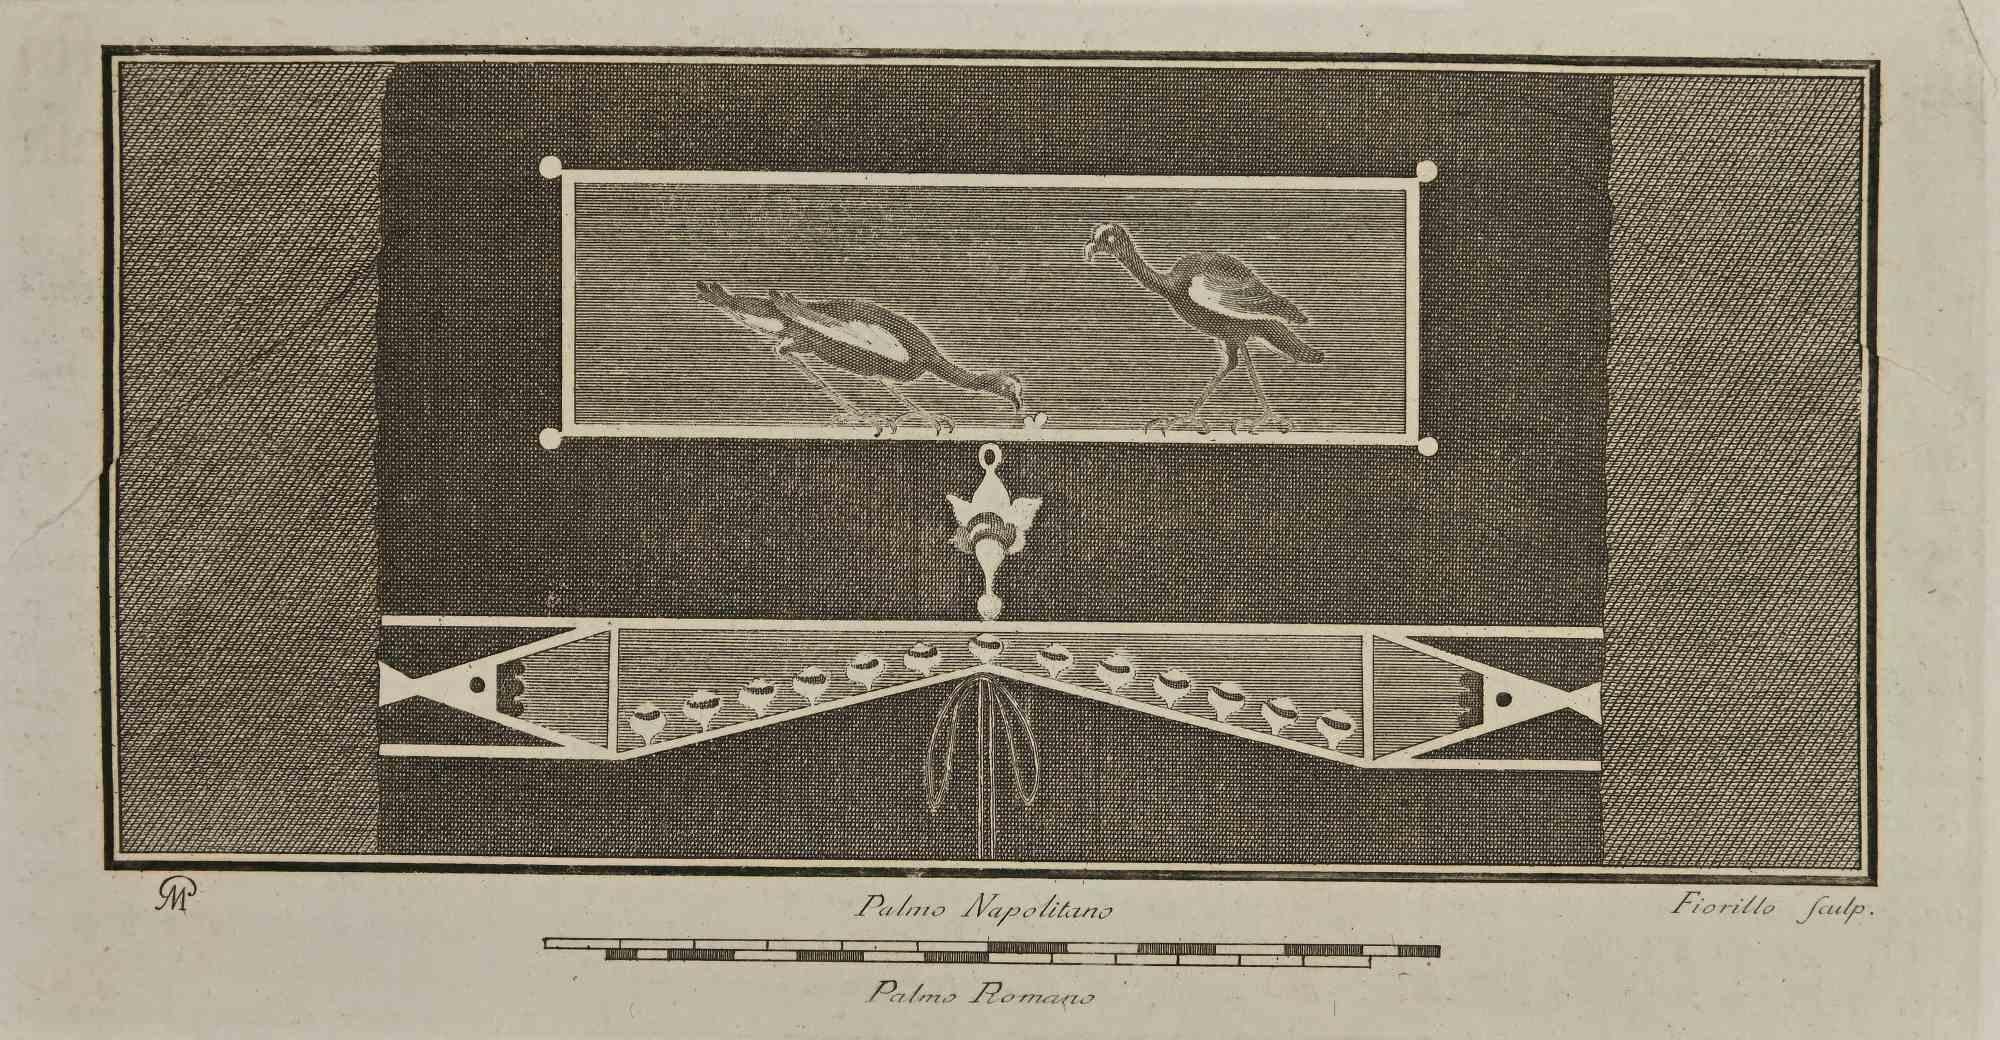 Fresque de Nature morte avec oiseaux des "Antiquités d'Herculanum" est une gravure sur papier réalisée par Nicola Fiorillo au 18ème siècle.

Signé sur la plaque.

Bon état avec quelques pliures.

La gravure appartient à la suite d'estampes